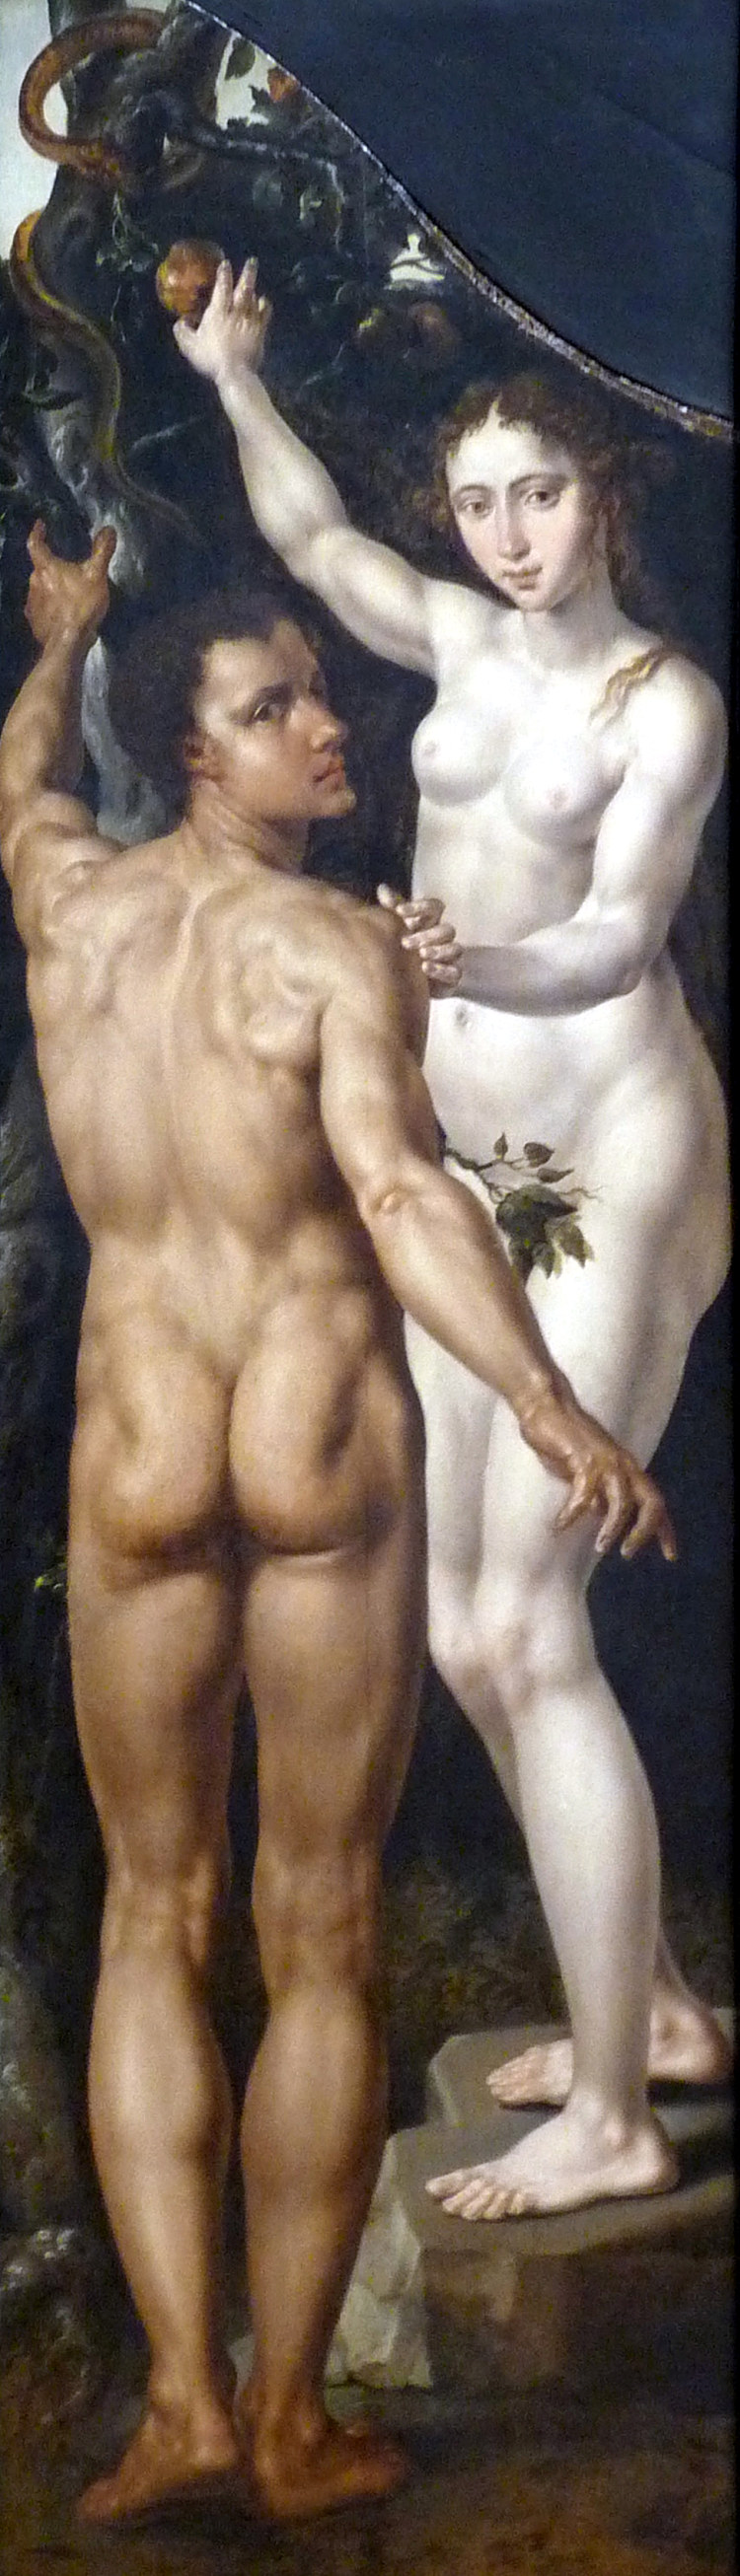 亚当和夏娃 Adam and Eve (c.1550)，迈尔顿·范·希姆斯柯克